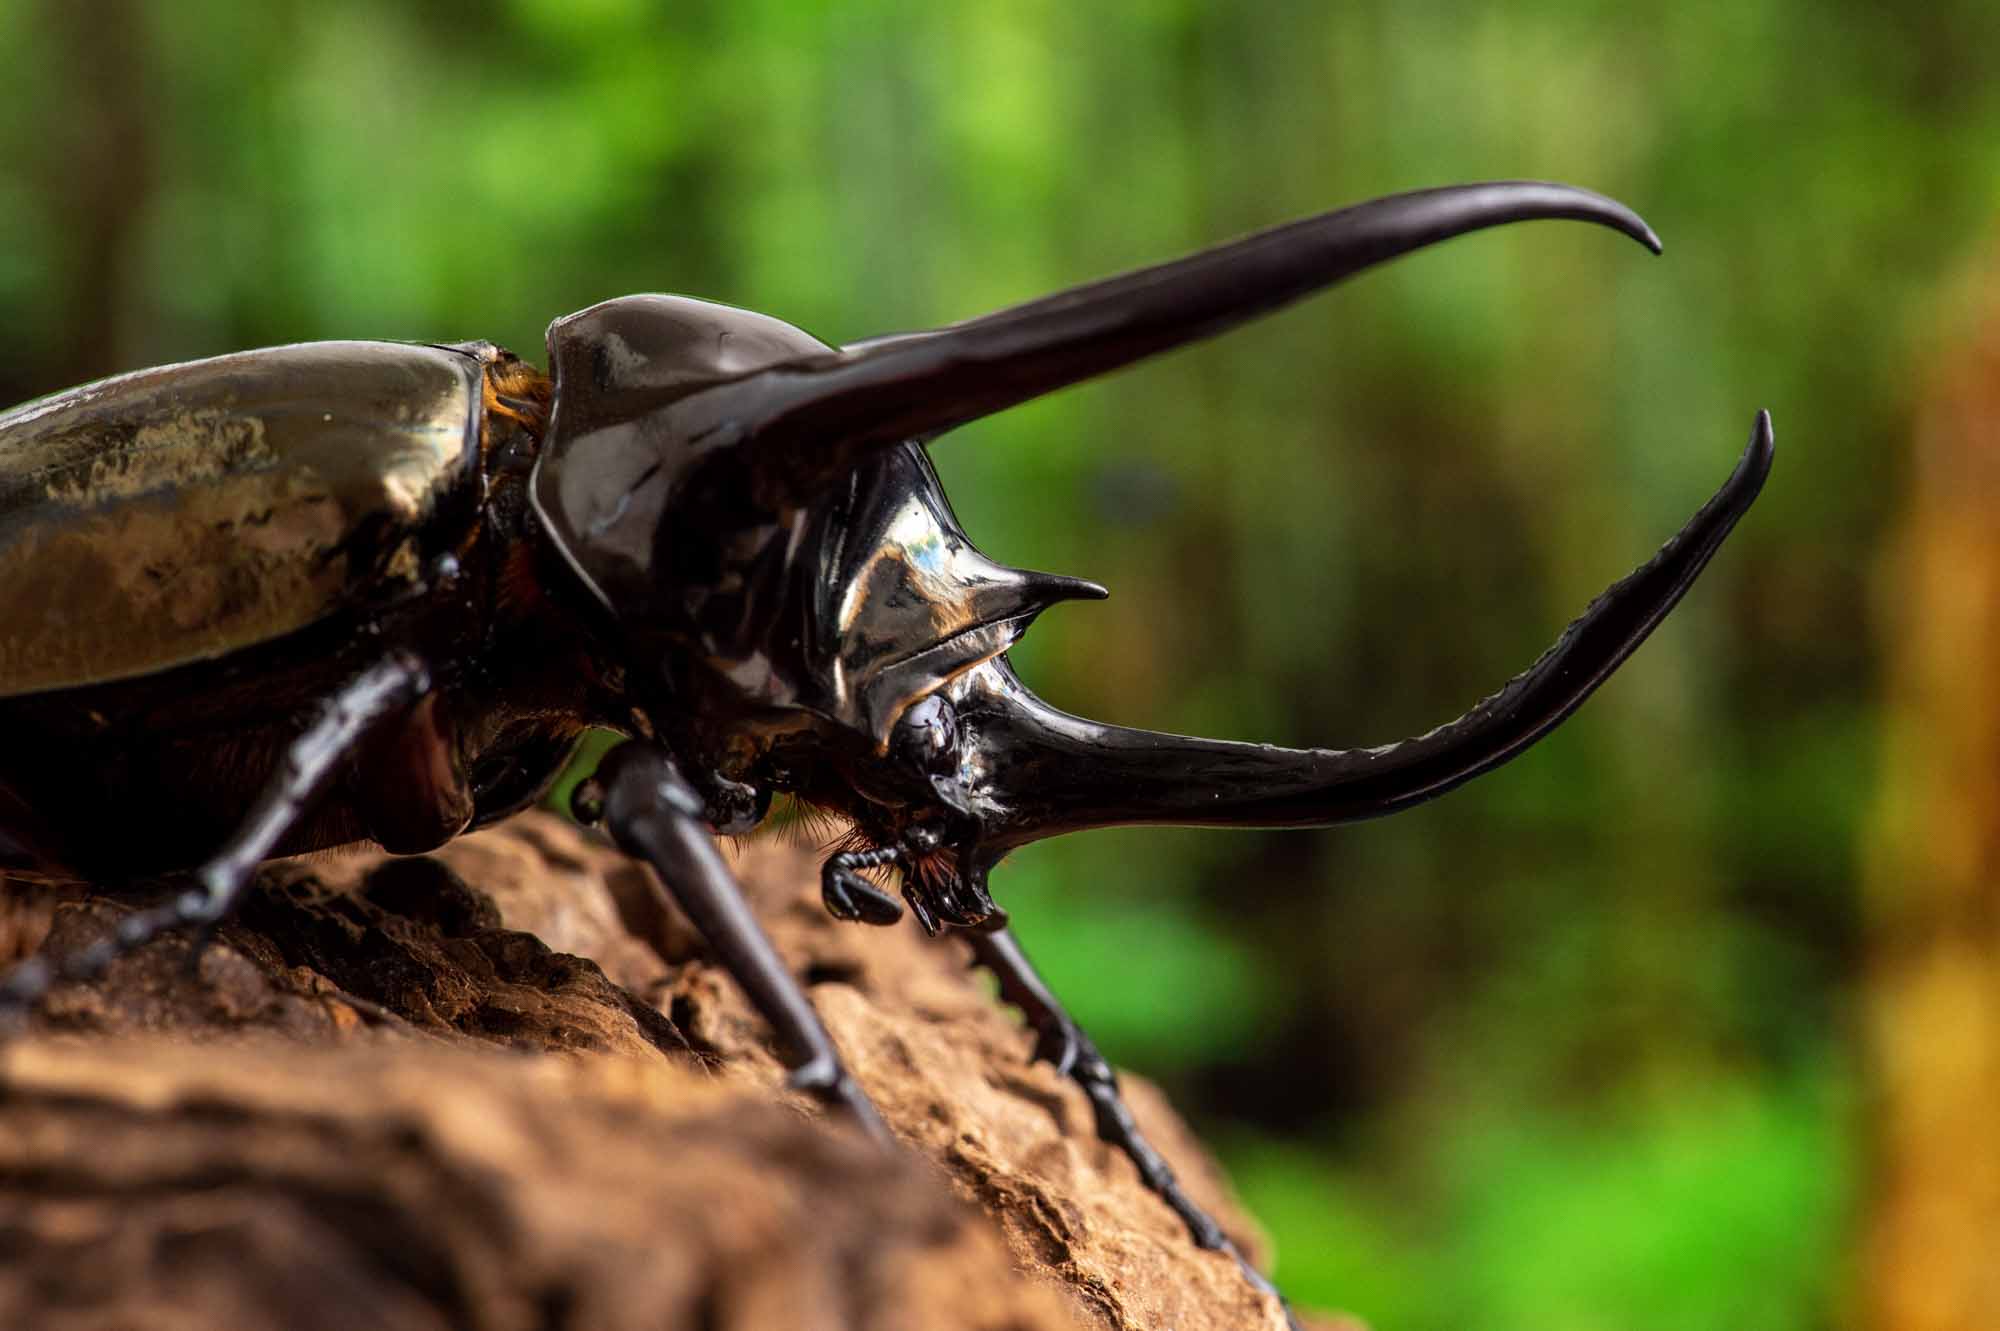 アトラスオオカブト 虫の写真と生態なら昆虫写真図鑑 ムシミル